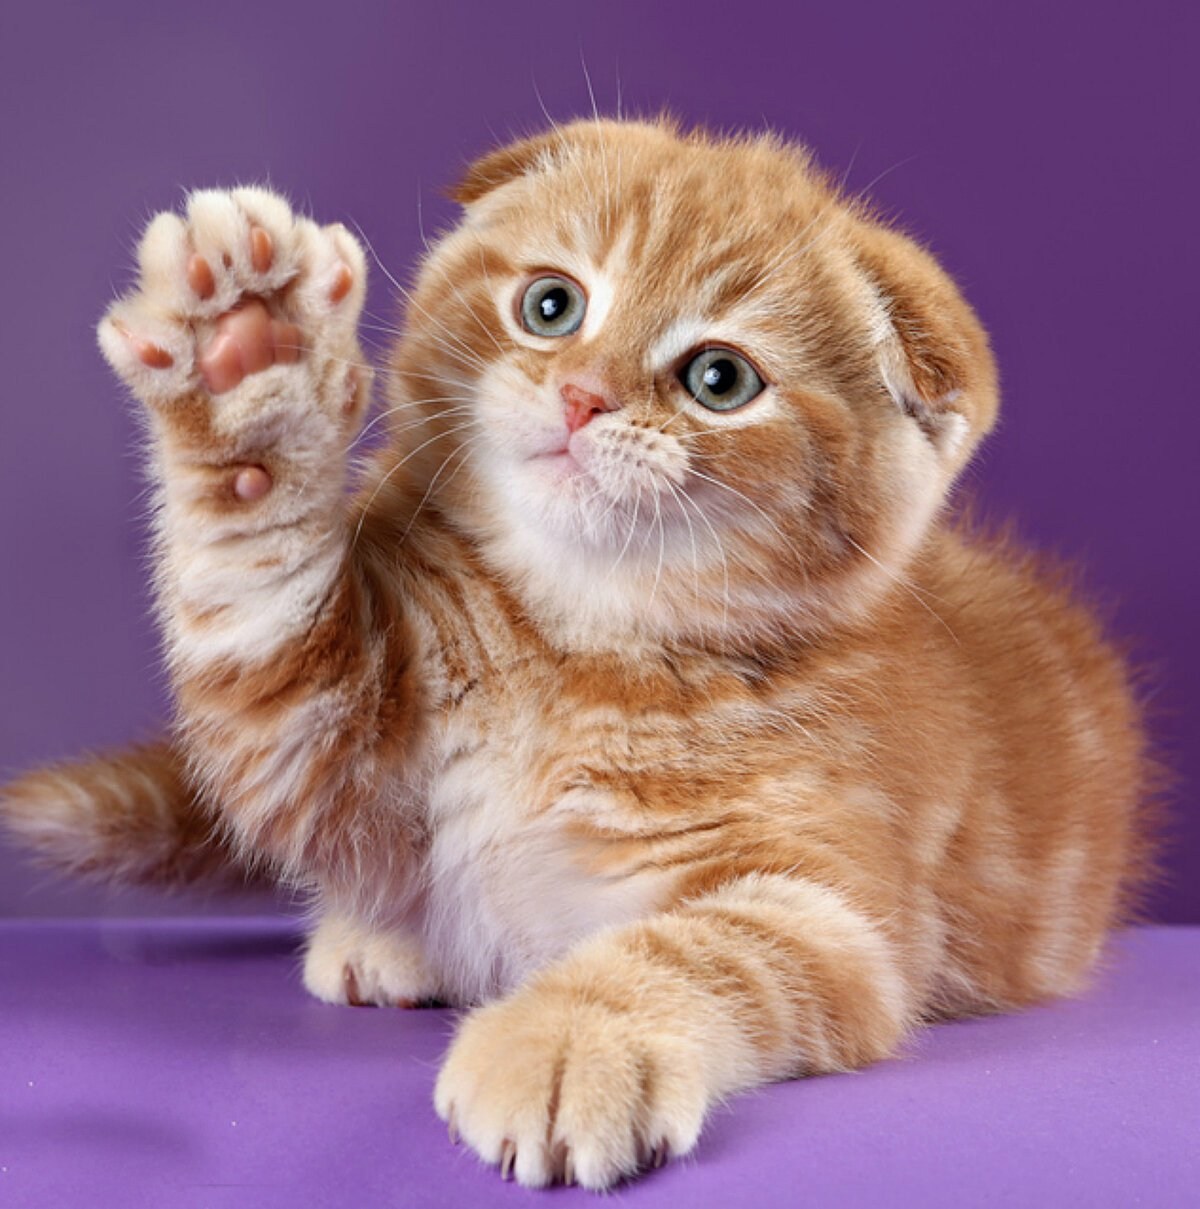 Шотландская кошка рыжие котята - картинки и фото koshka.top